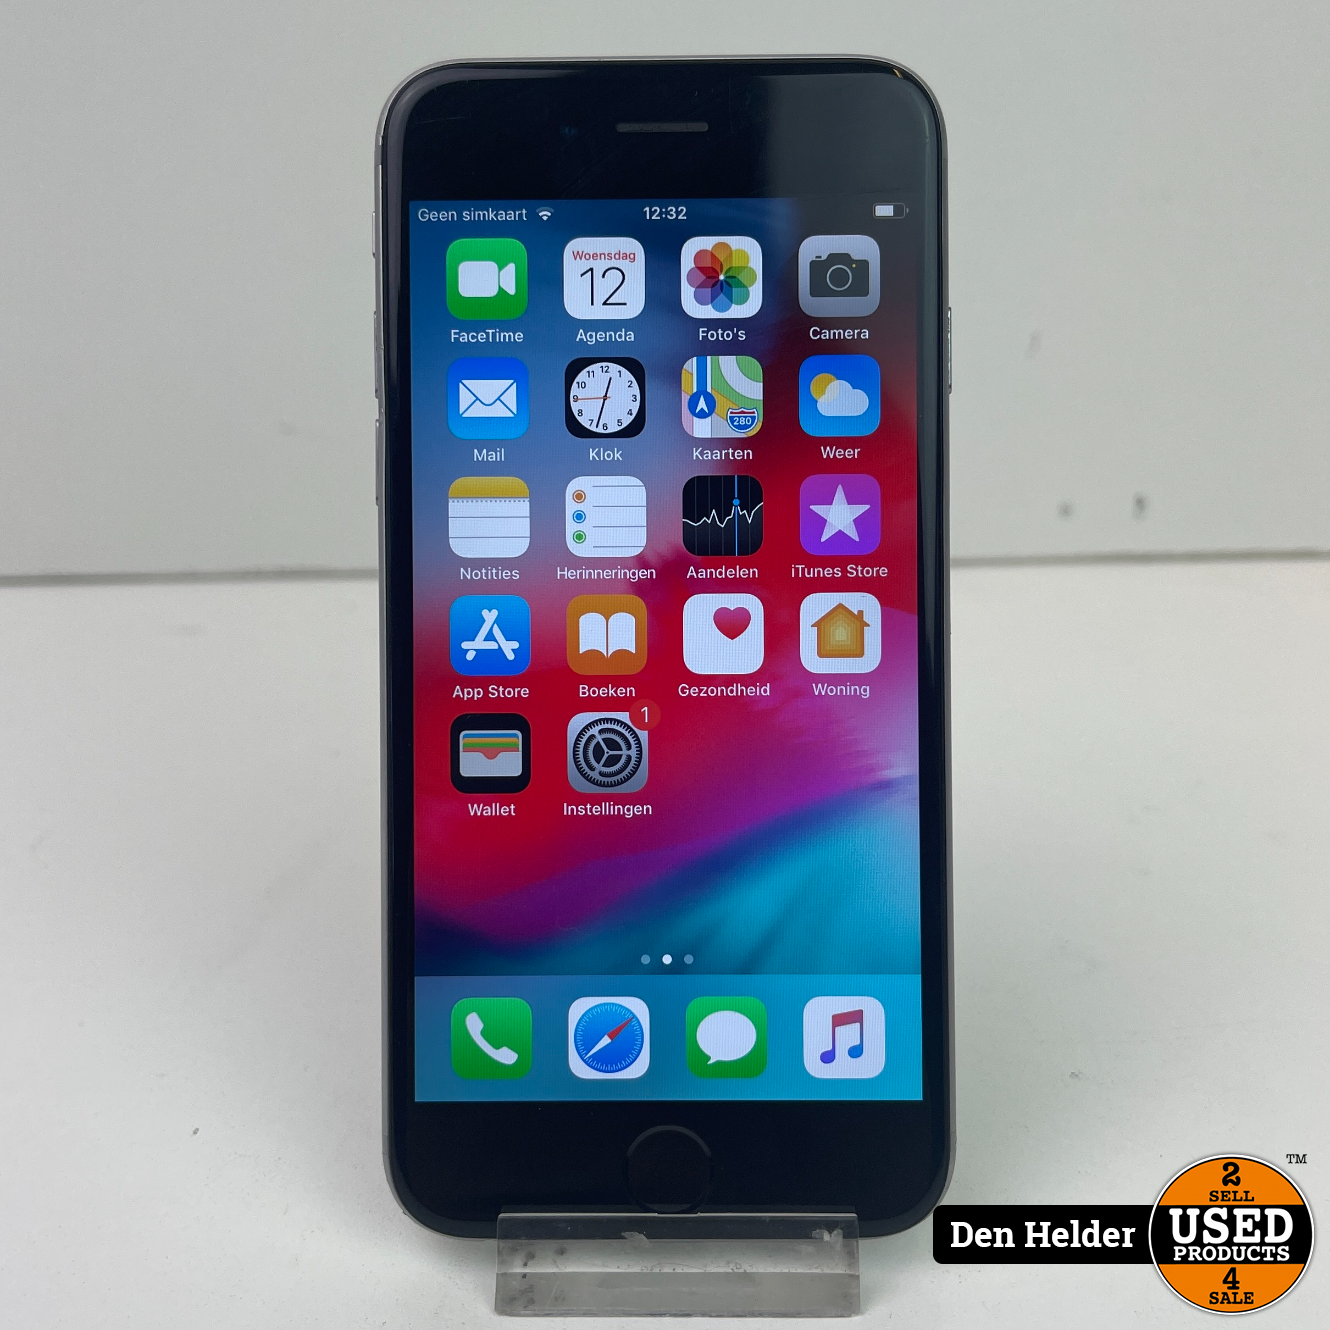 zacht Crack pot dynastie Apple iPhone 6 16GB Accu 100 - In Goede Staat - Used Products Den Helder